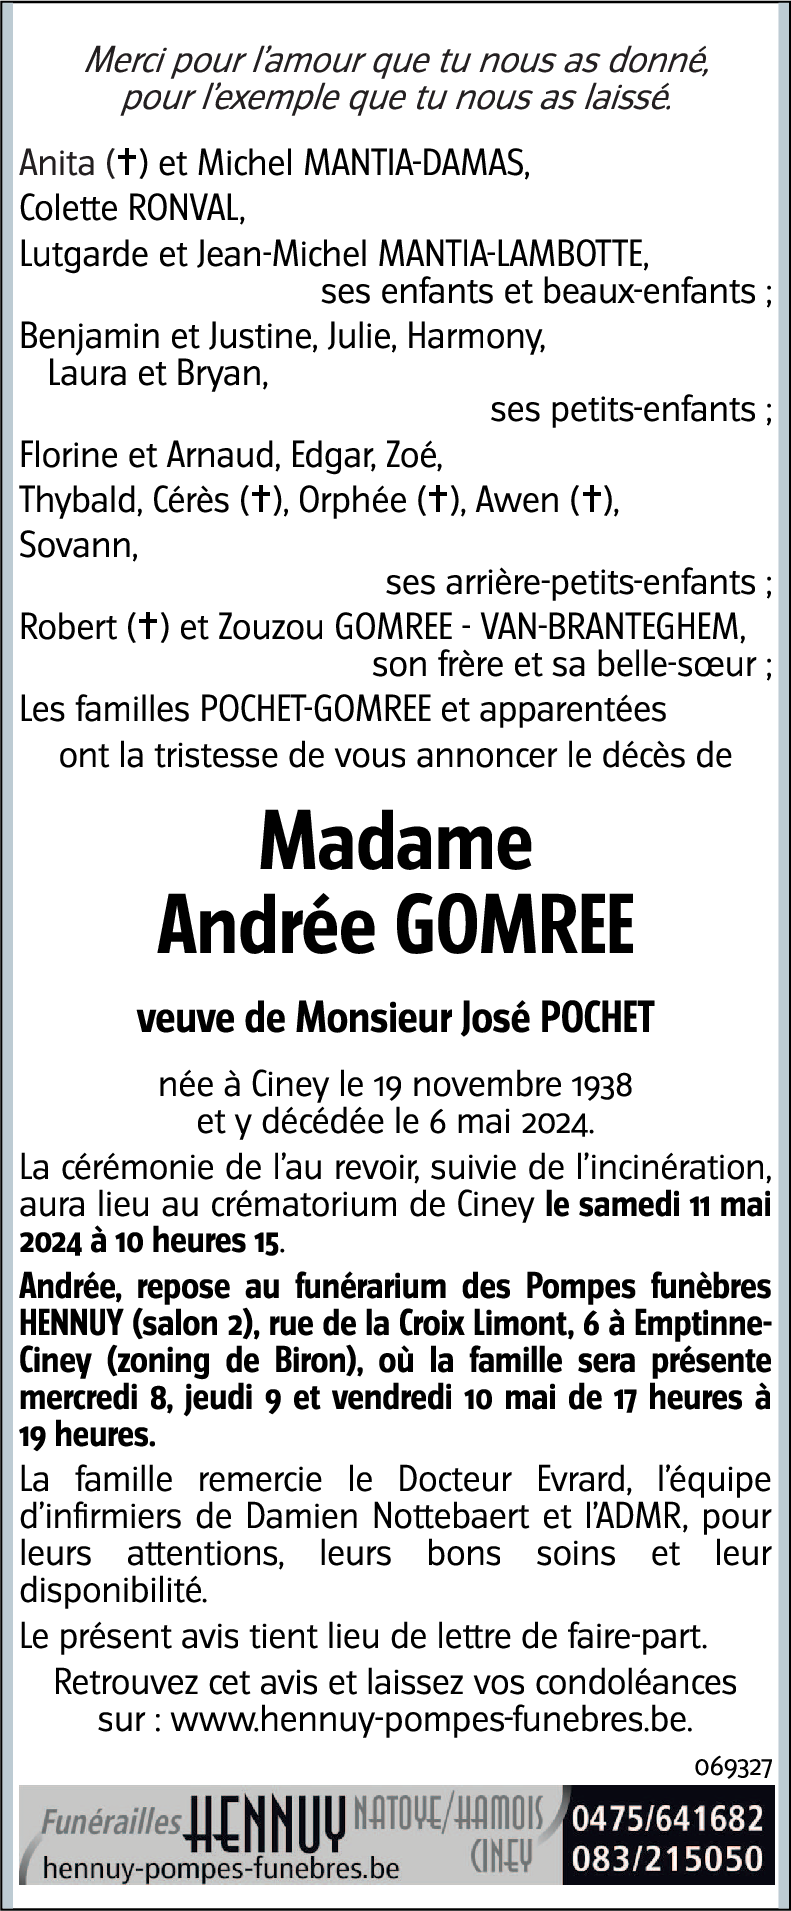 Andrée GOMREE